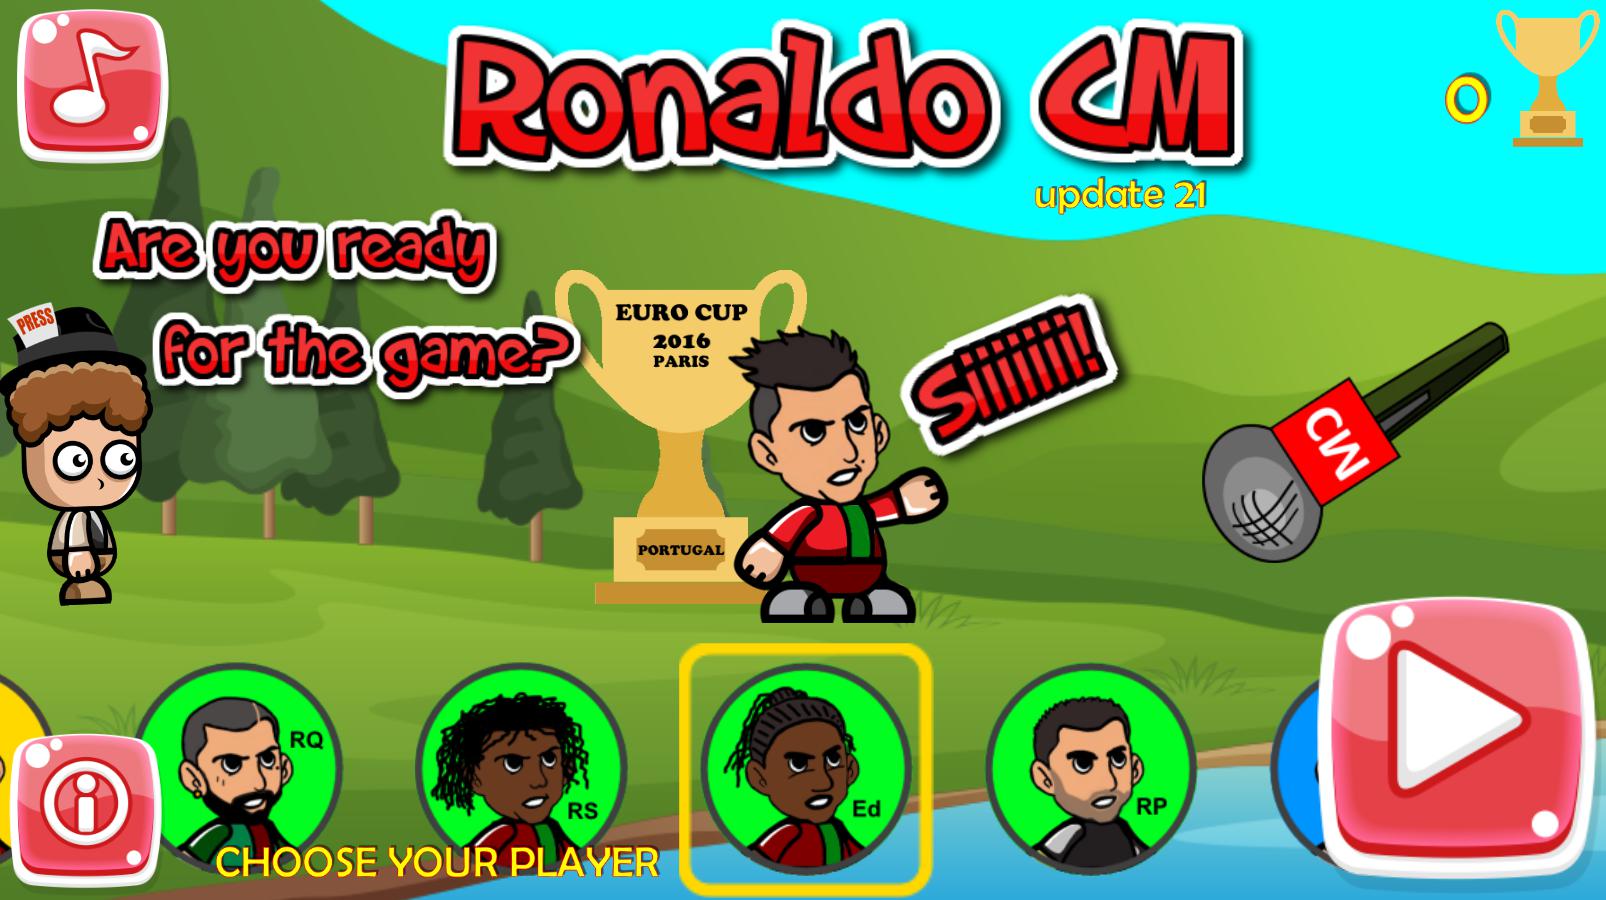 Ronaldo CM